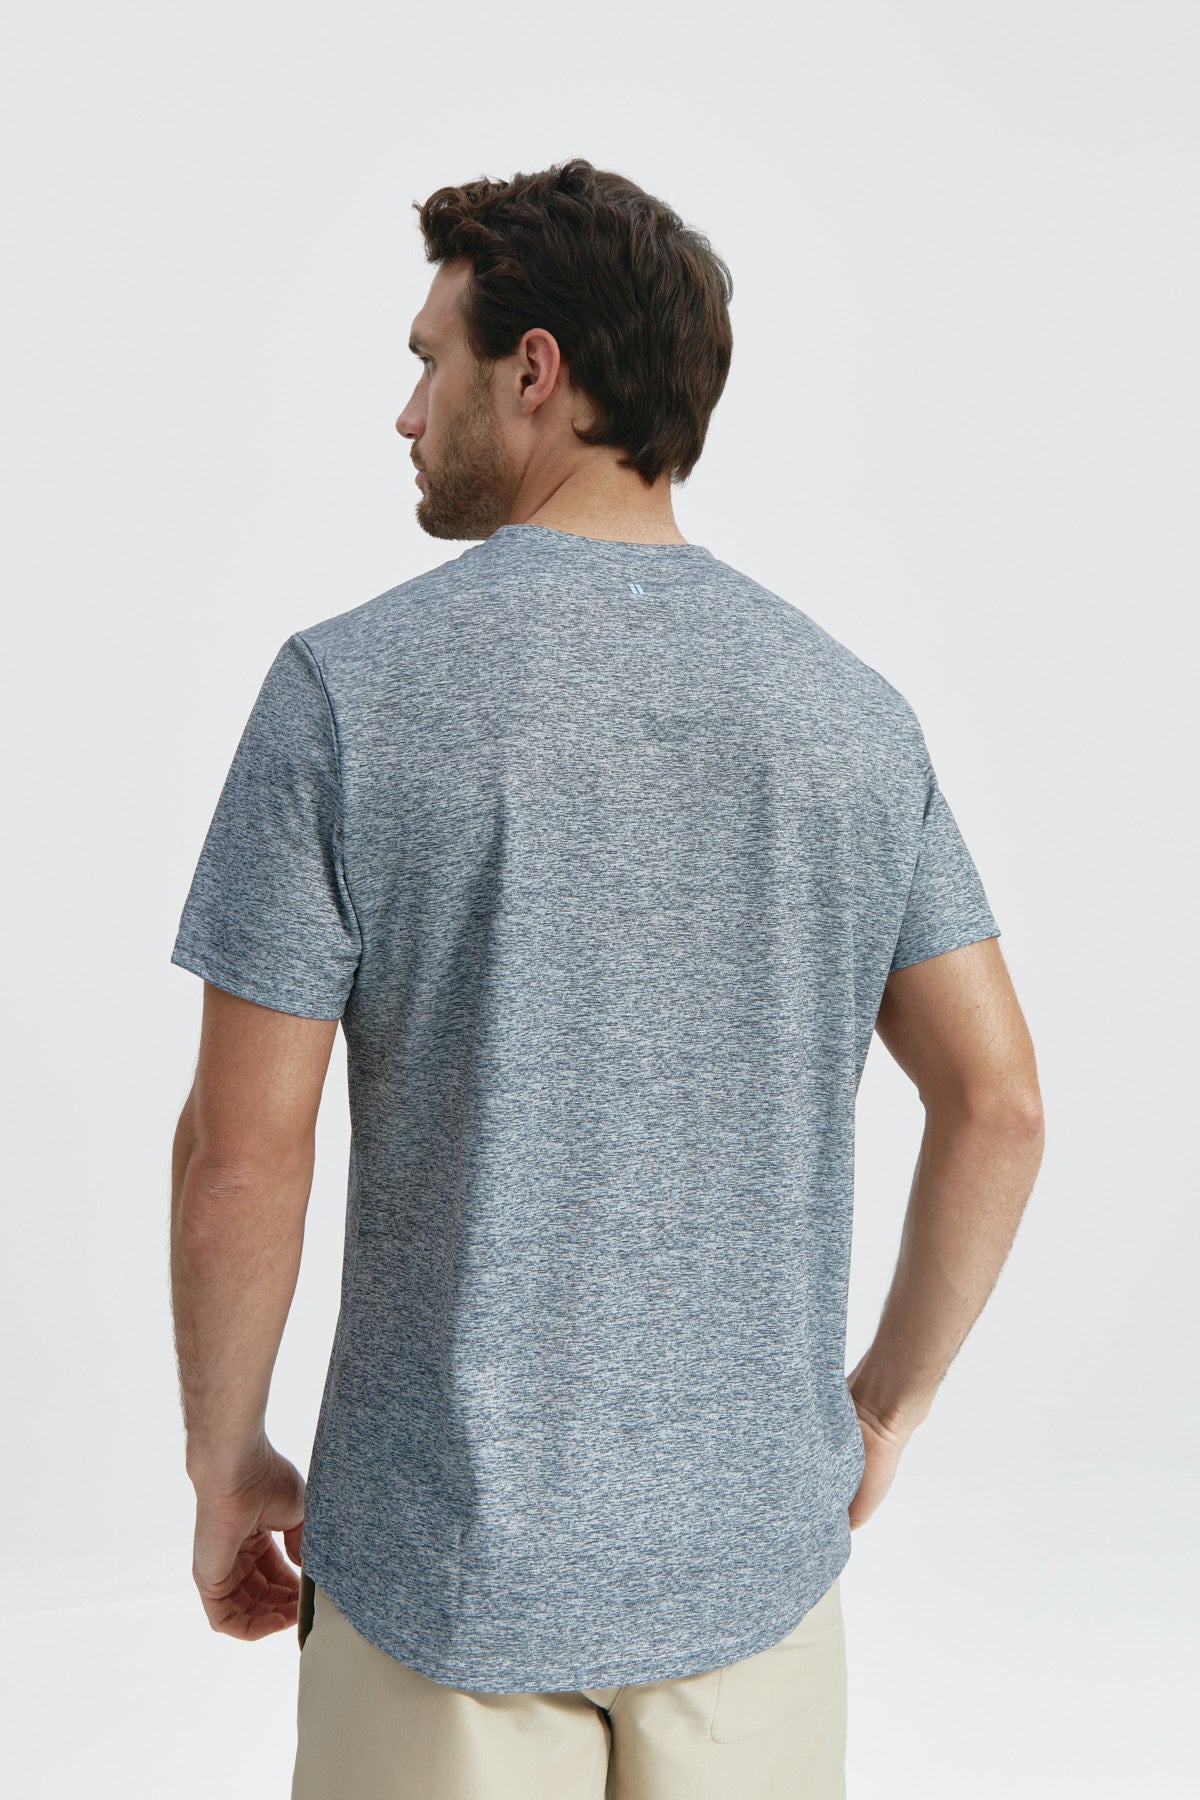 Camiseta de hombre en gris melange. de Sepiia, fresca y estilosa. Foto de espalda.